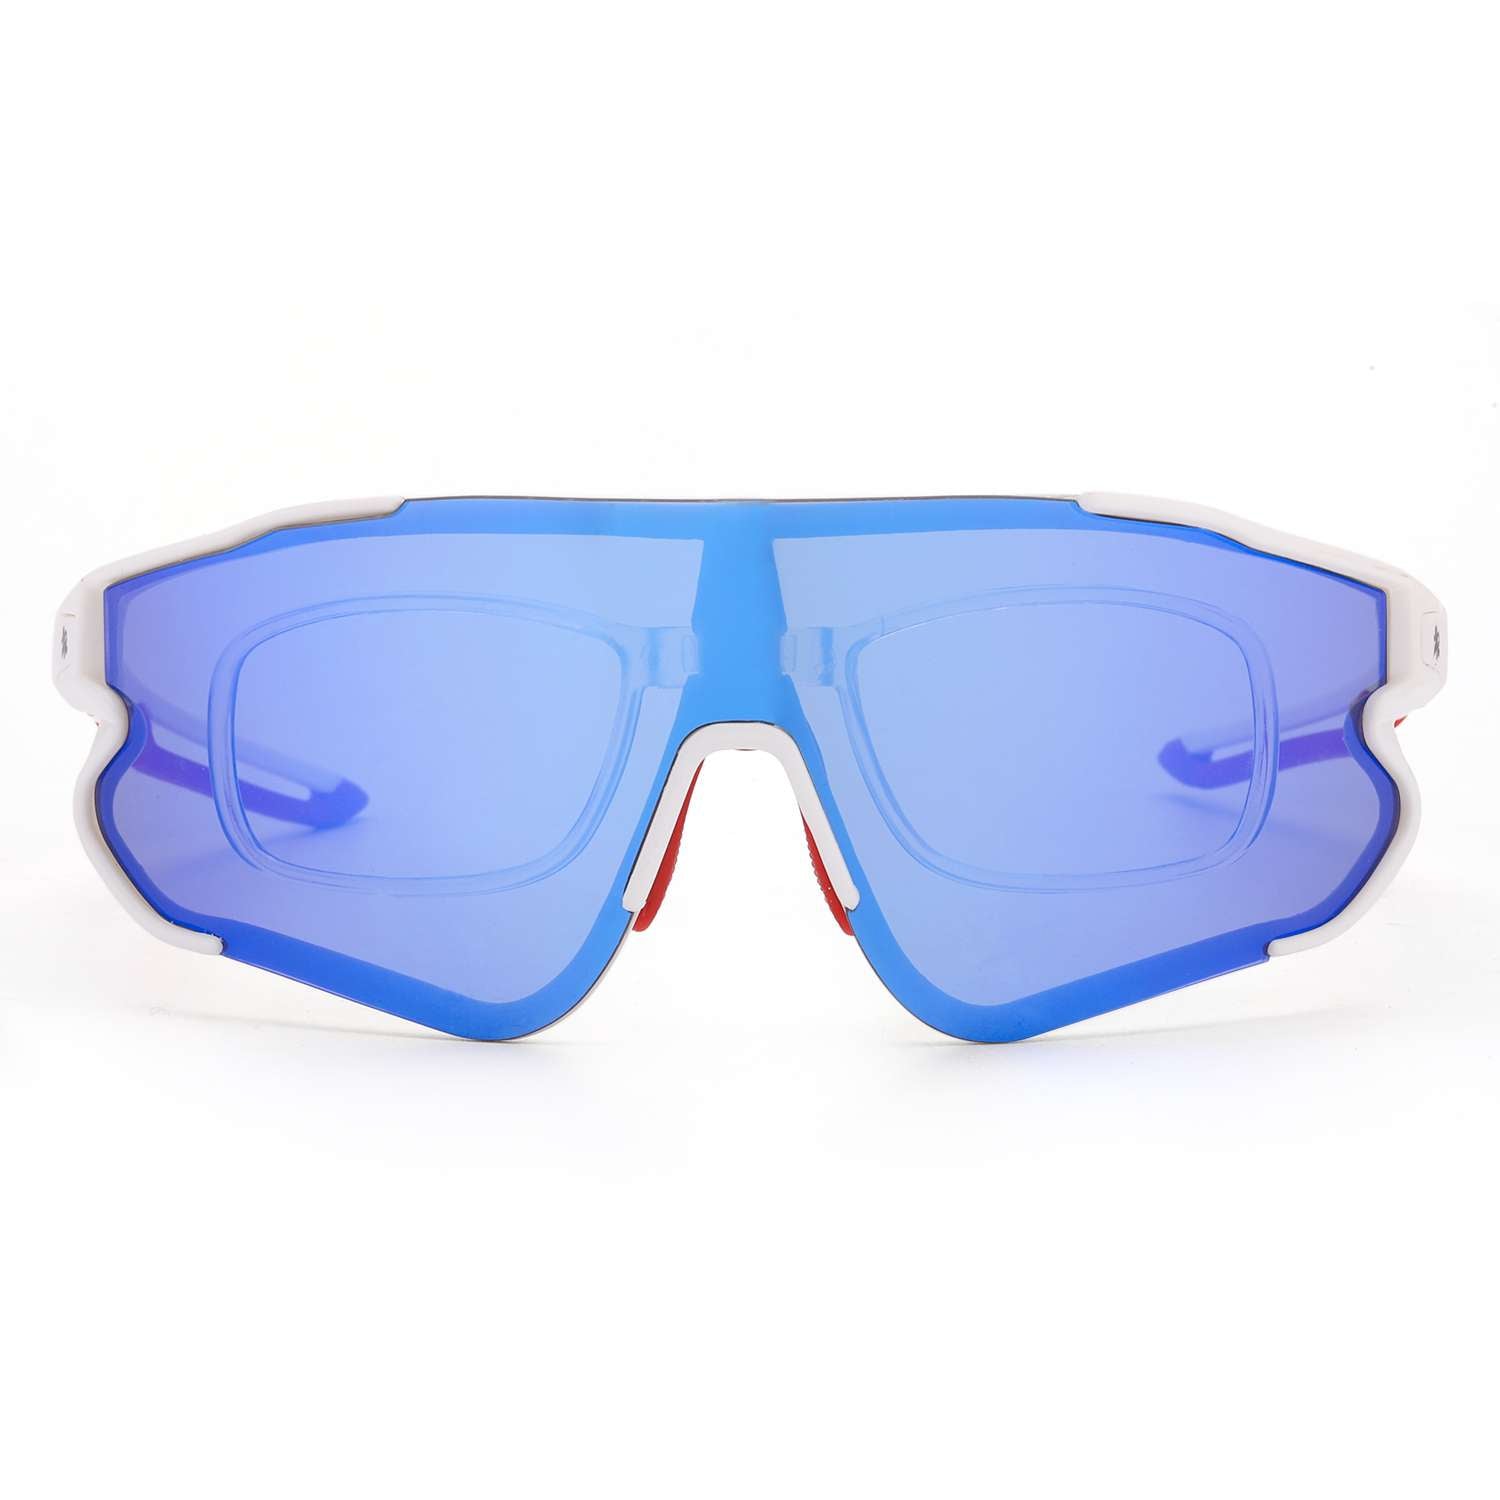 LVIOE P-Viper Oversized Modern Design Sports Sunglasses for Unisex